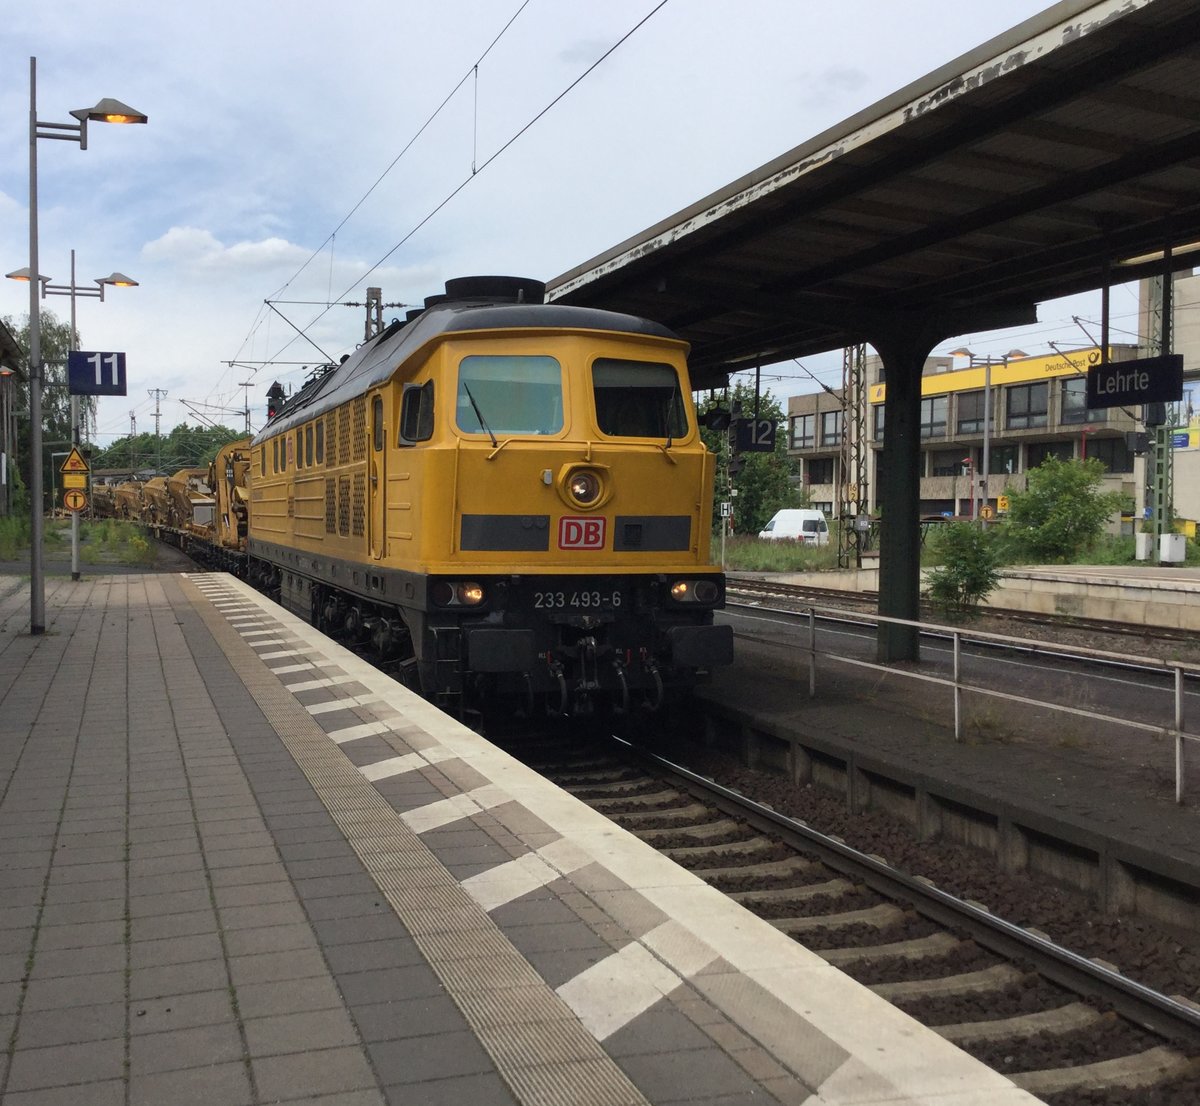 BR 233 493, in Lehrte, im Jahre 2016, mit DB-Bauzug.